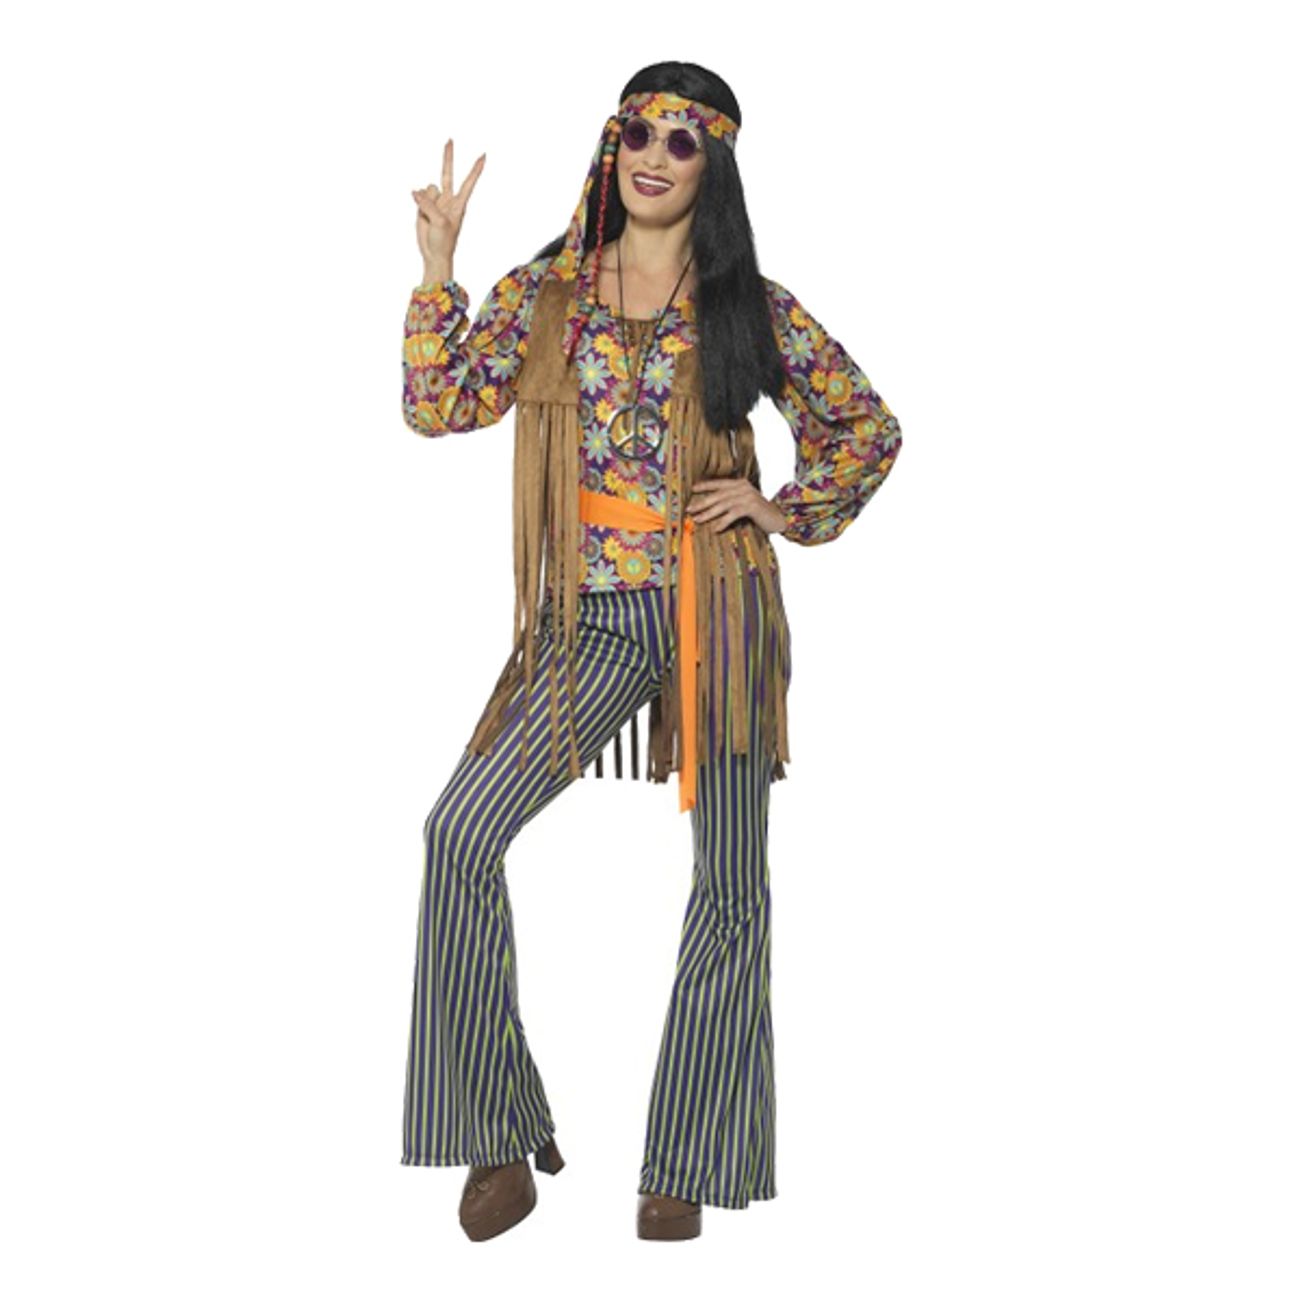 60-tals-hippietjej-maskeraddrakt-1